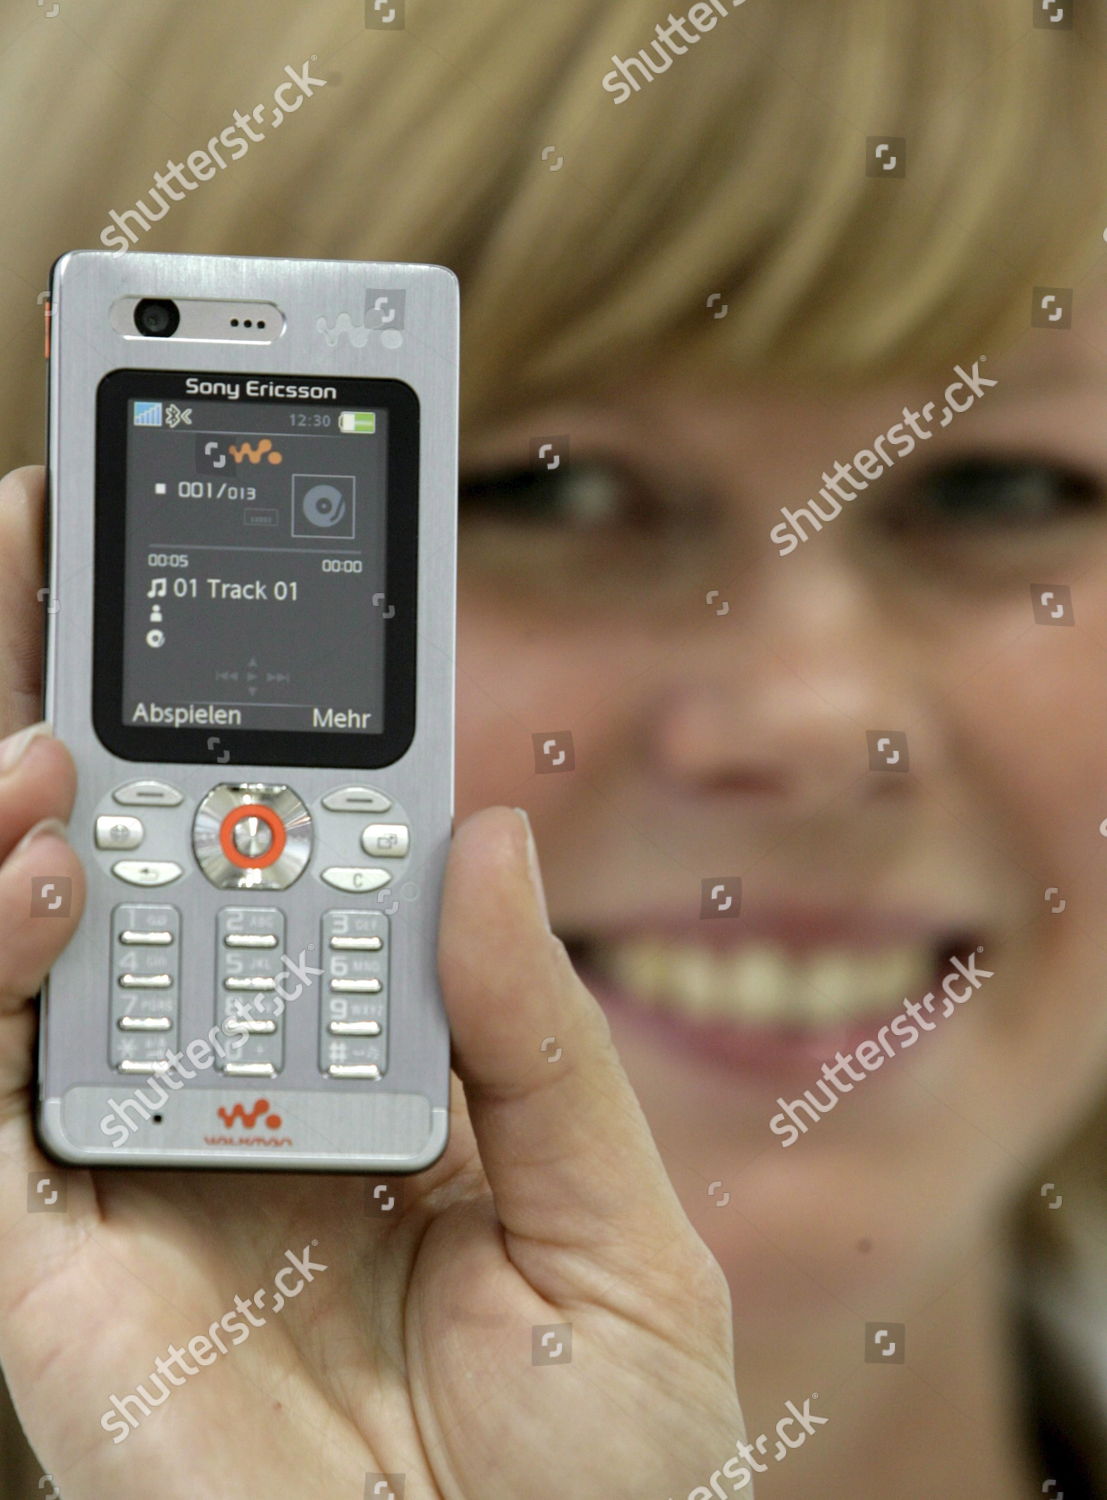 Novo telefone celular Sony Ericsson W880i em segunda mão durante